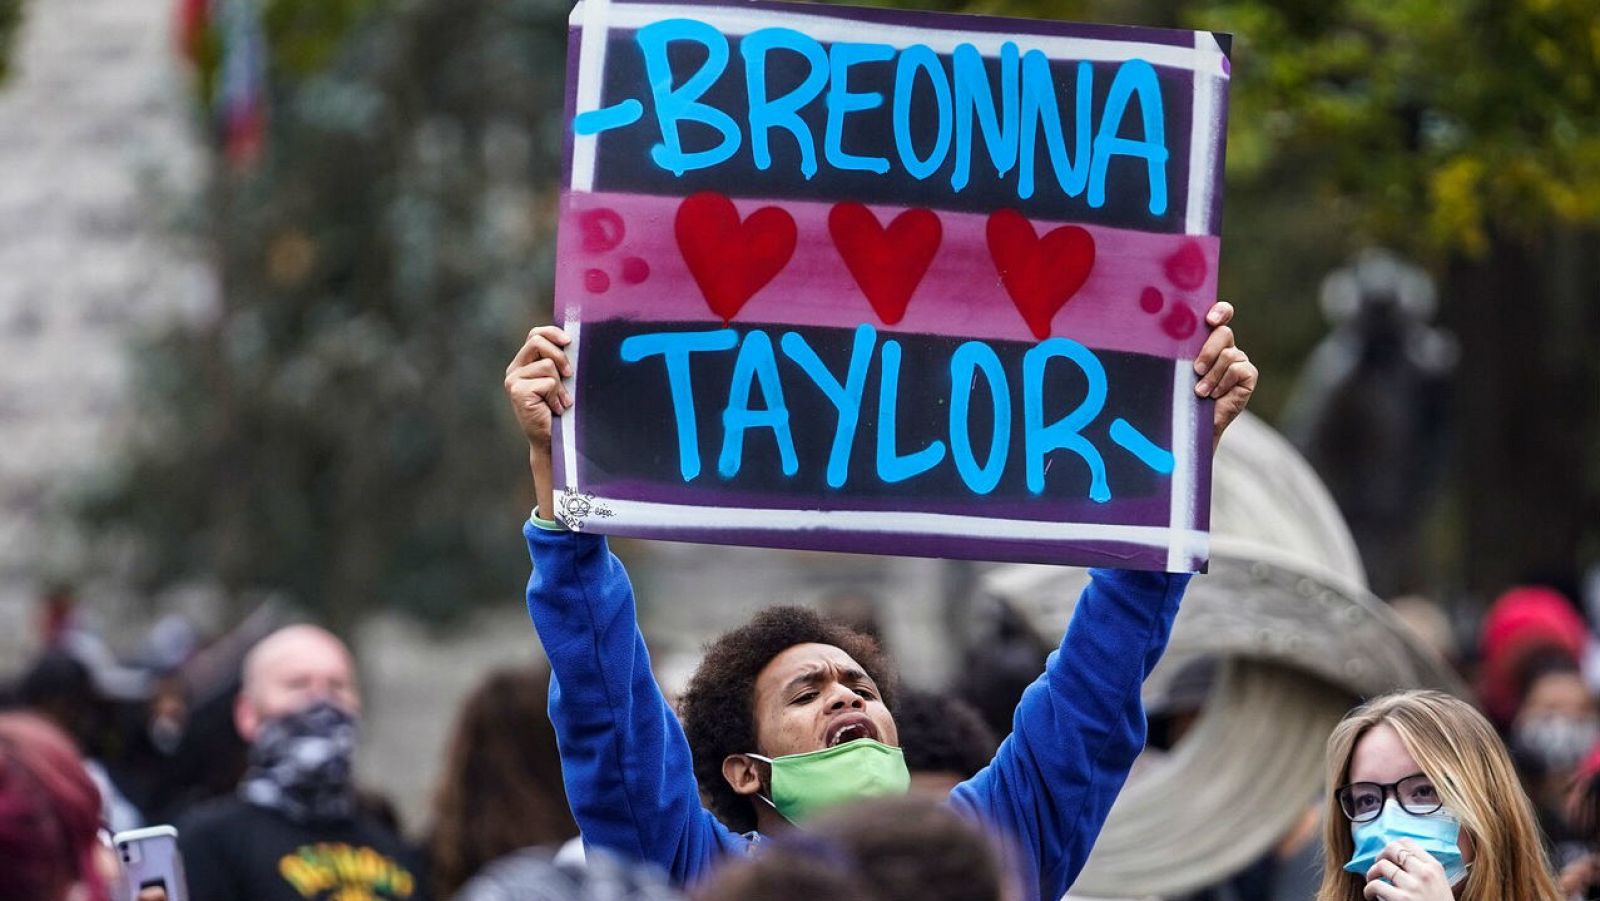 Dos policías heridos de bala en las protestas raciales en EE.UU. por la muerte de Breonna Taylor